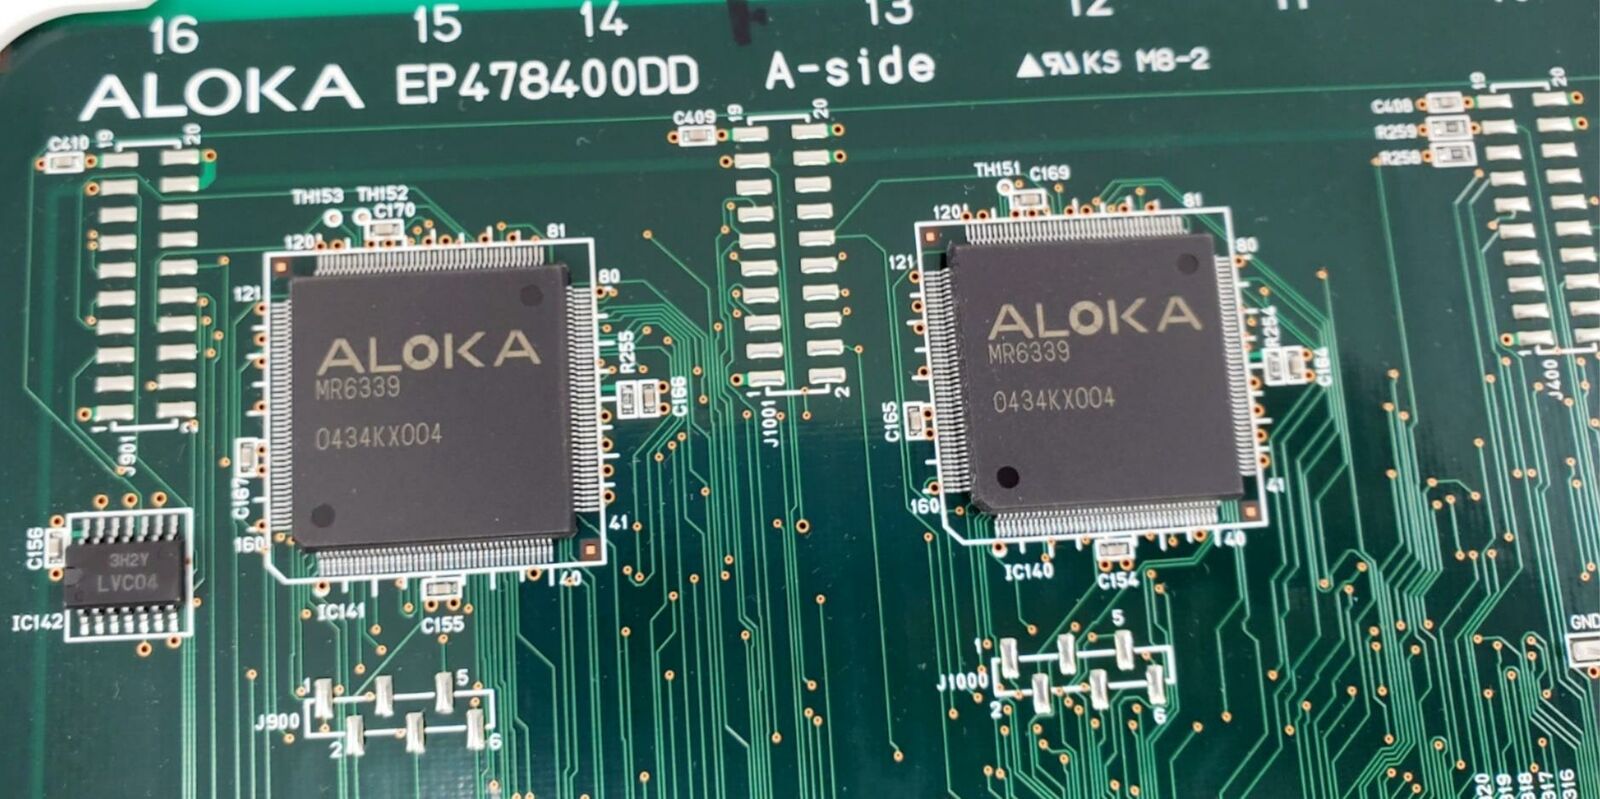 Aloka SSD-4000 Prosound Ultrasound Assembly Board EP4784000DD A-Side DIAGNOSTIC ULTRASOUND MACHINES FOR SALE